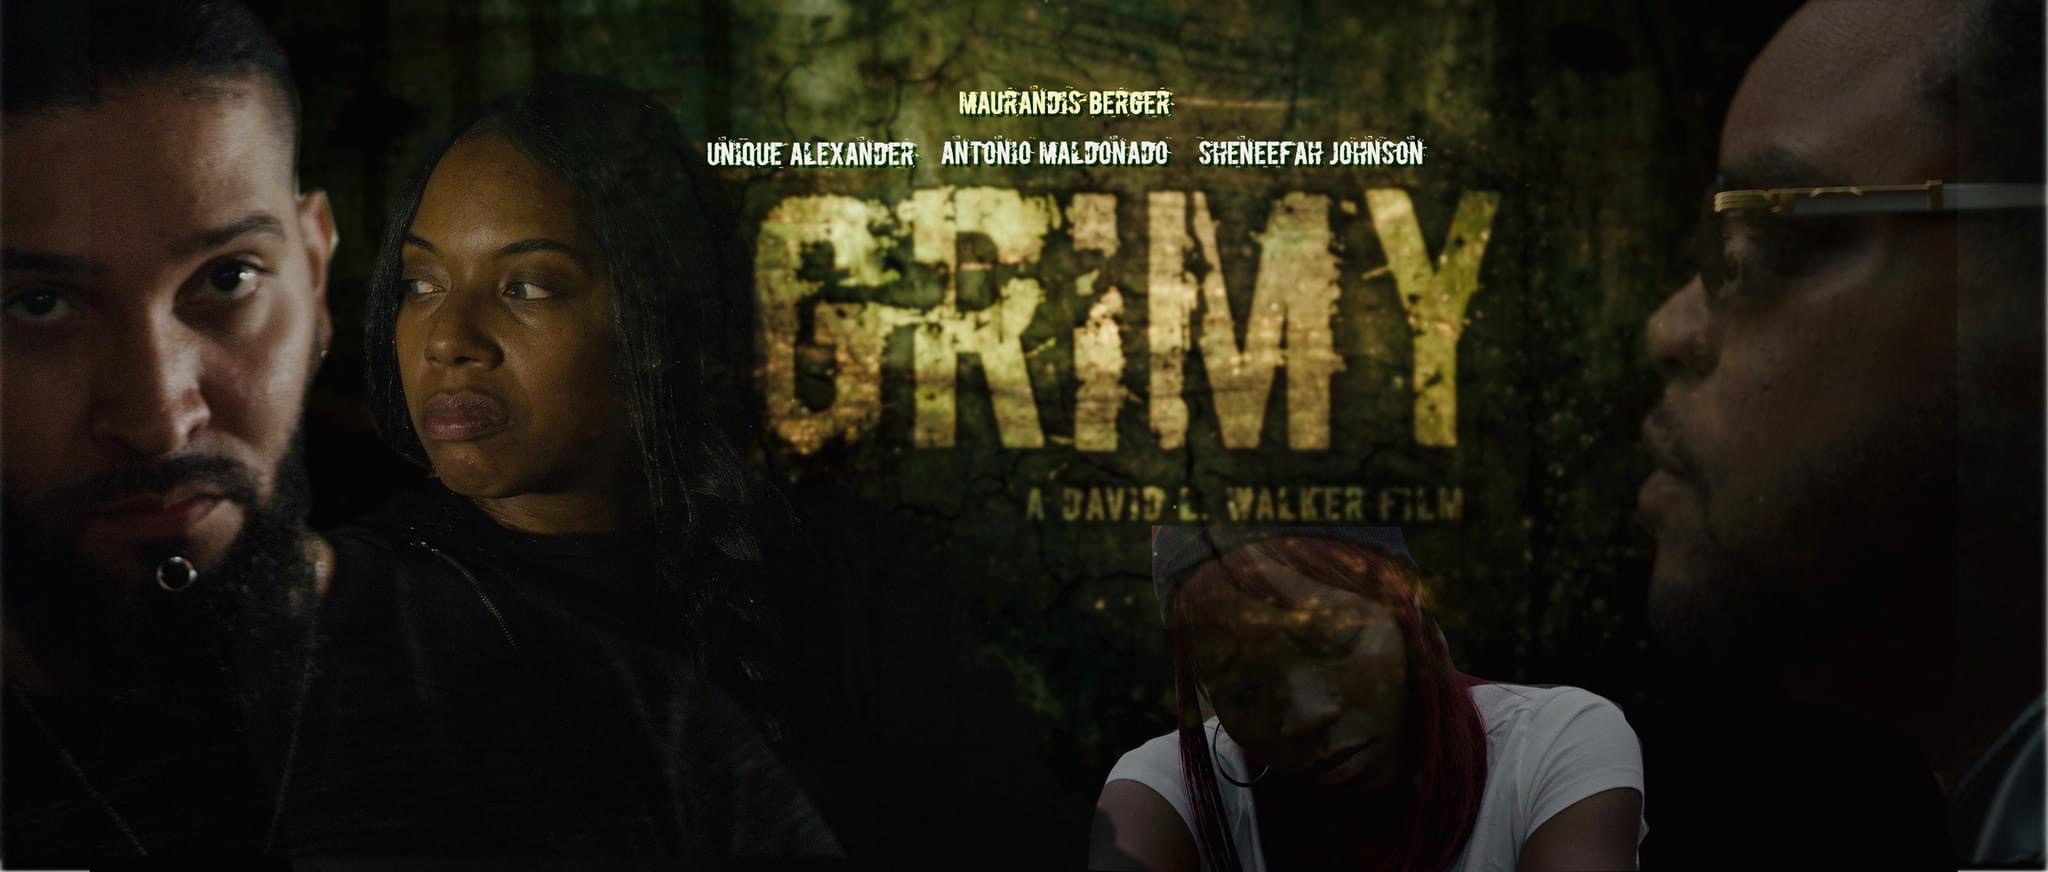 Watch Grimy